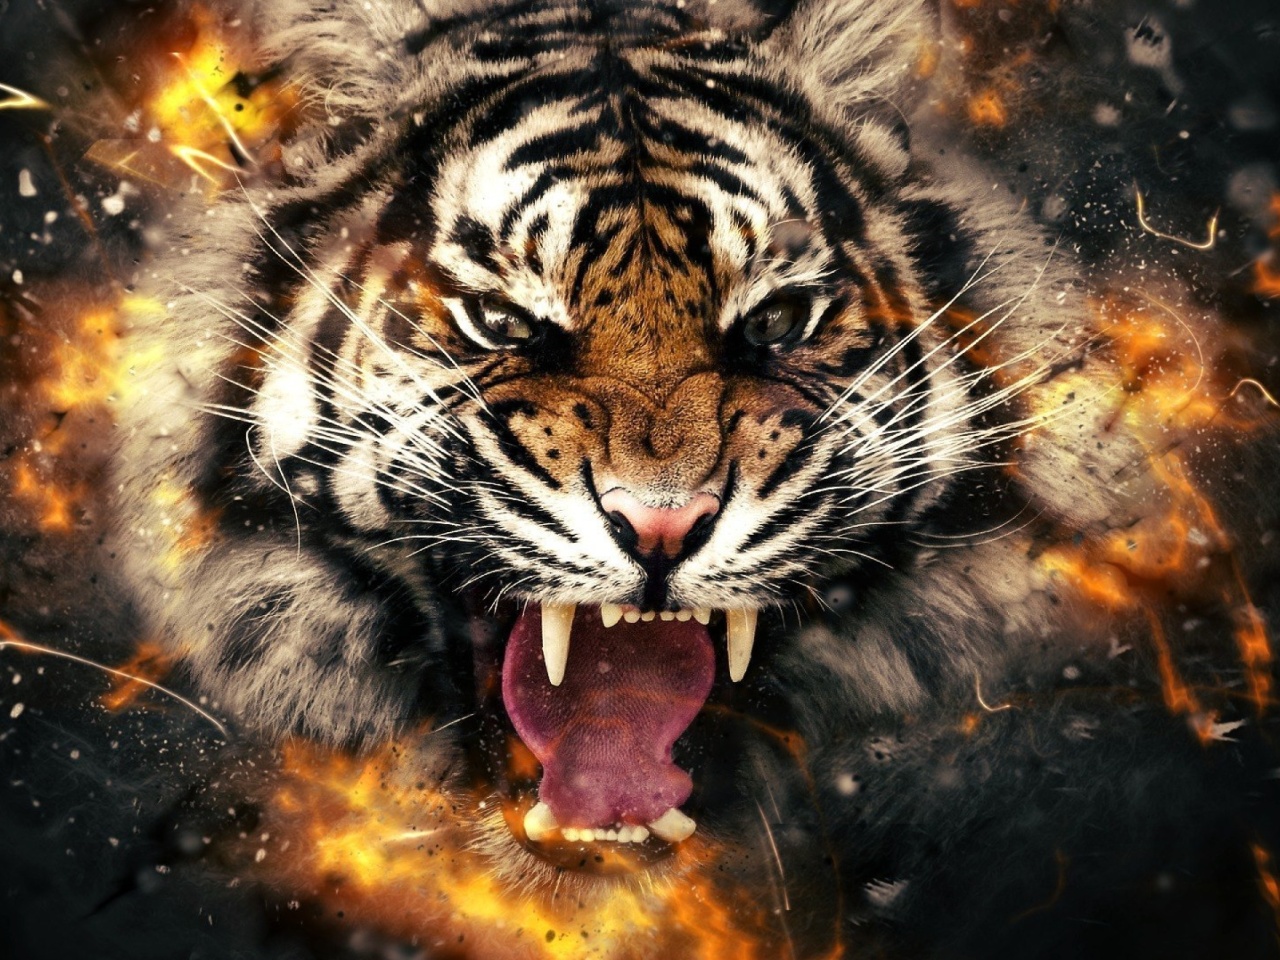 Das Fire Tiger Wallpaper 1280x960